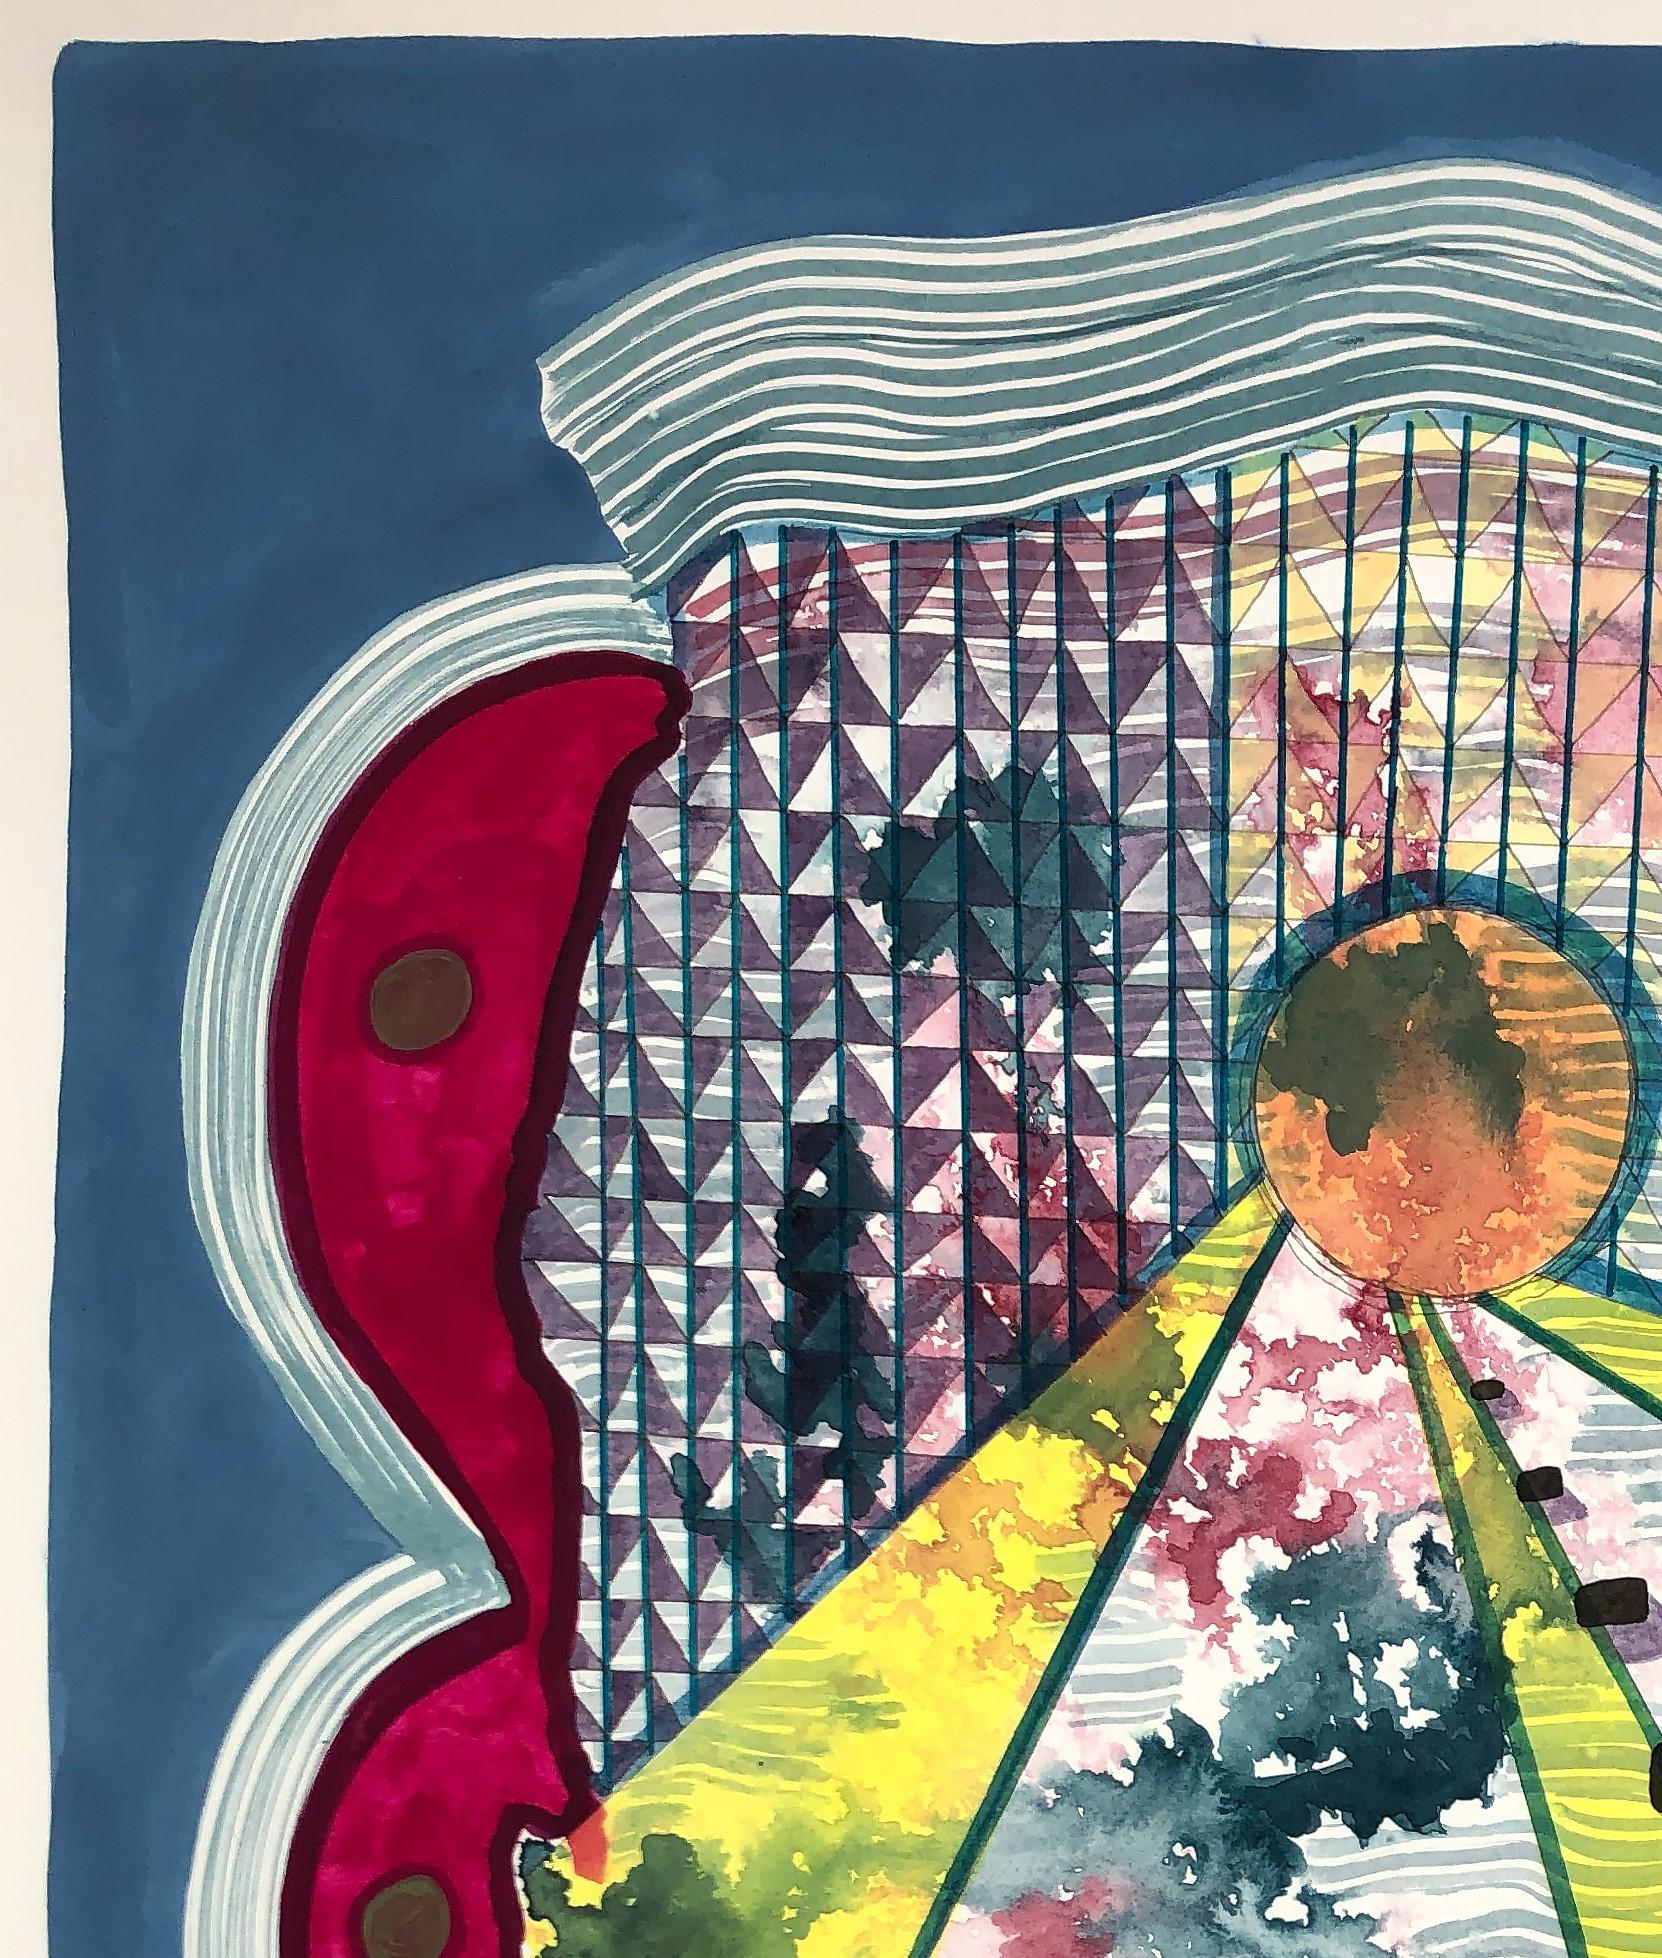 Zeitgenössisches abstraktes geometrisches Gemälde mit bunten Mustern des in Texas lebenden Künstlers Max Manning. Das Werk weist organische und  geometrische Formen in Blau, Magenta, Gelb, Grün, Schwarz und Weiß. Signiert vom Künstler auf der